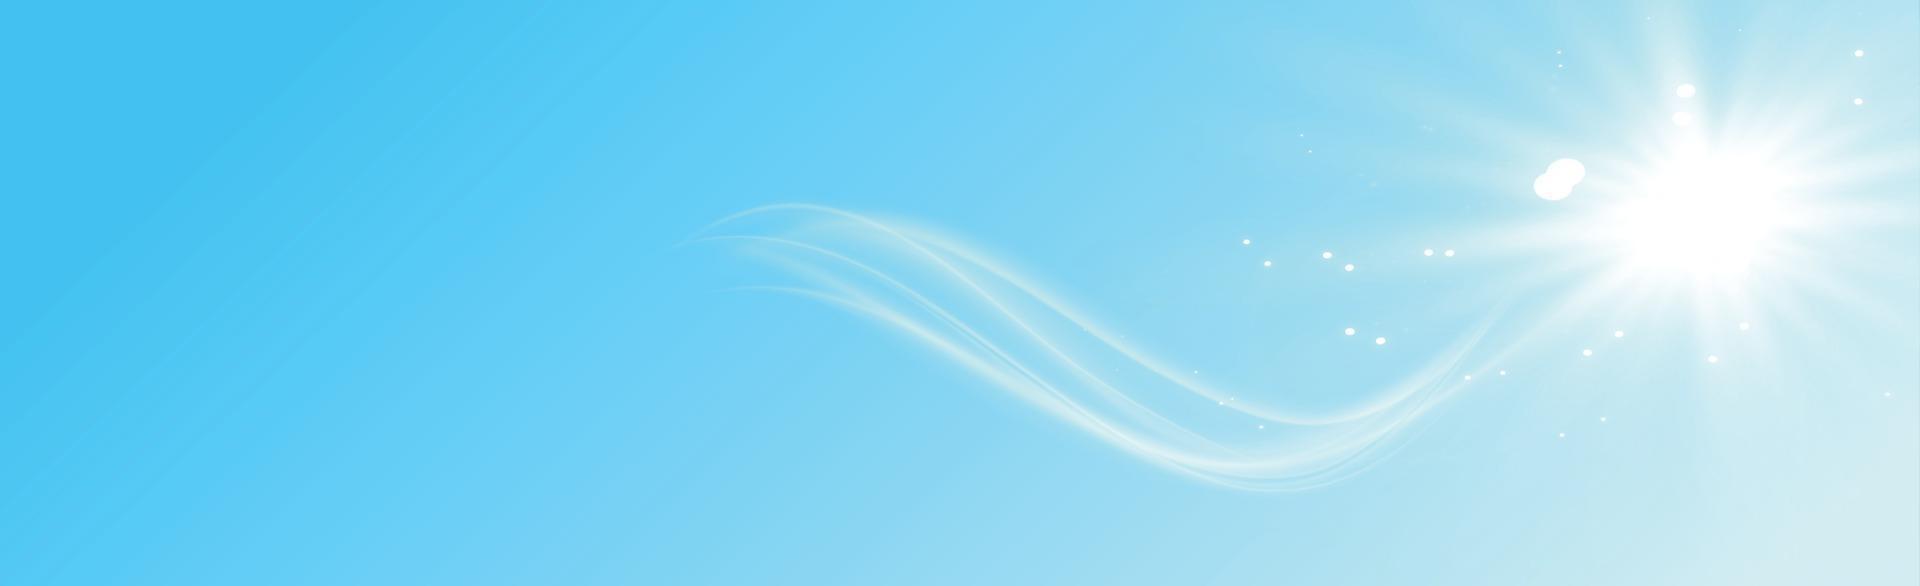 panorama solig bakgrund i mjukblå färg - illustration vektor